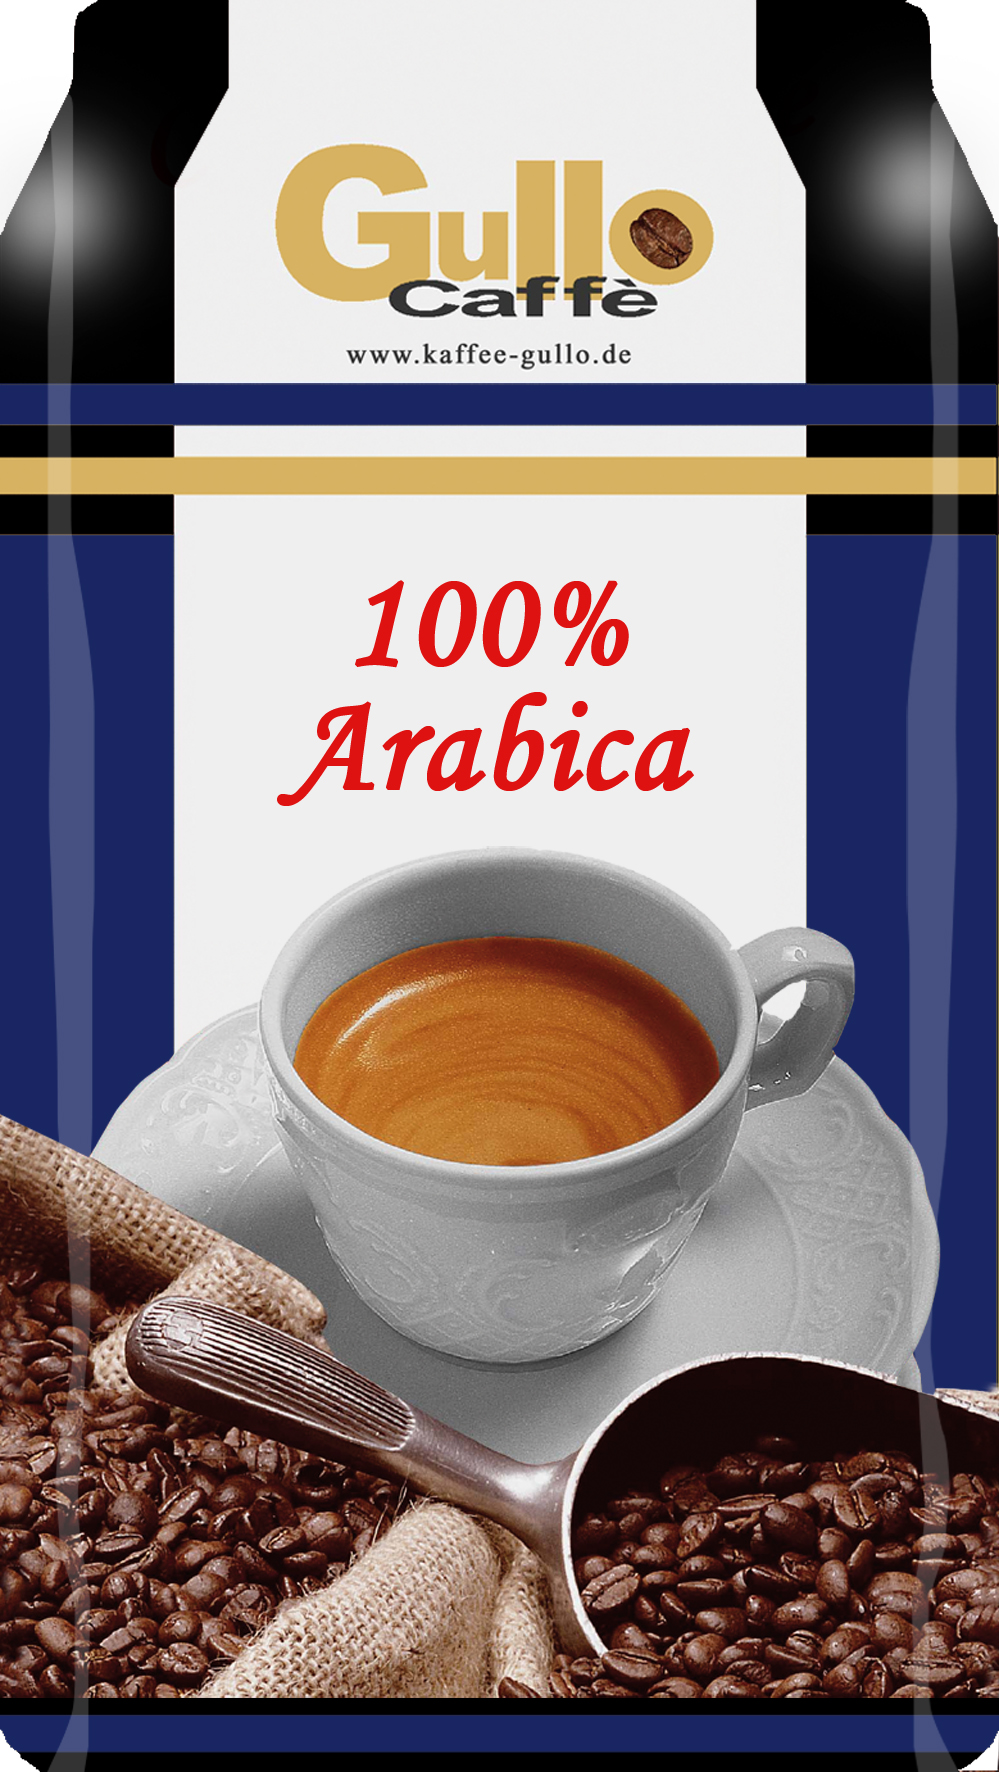 Caffe Gullo100% Arabica